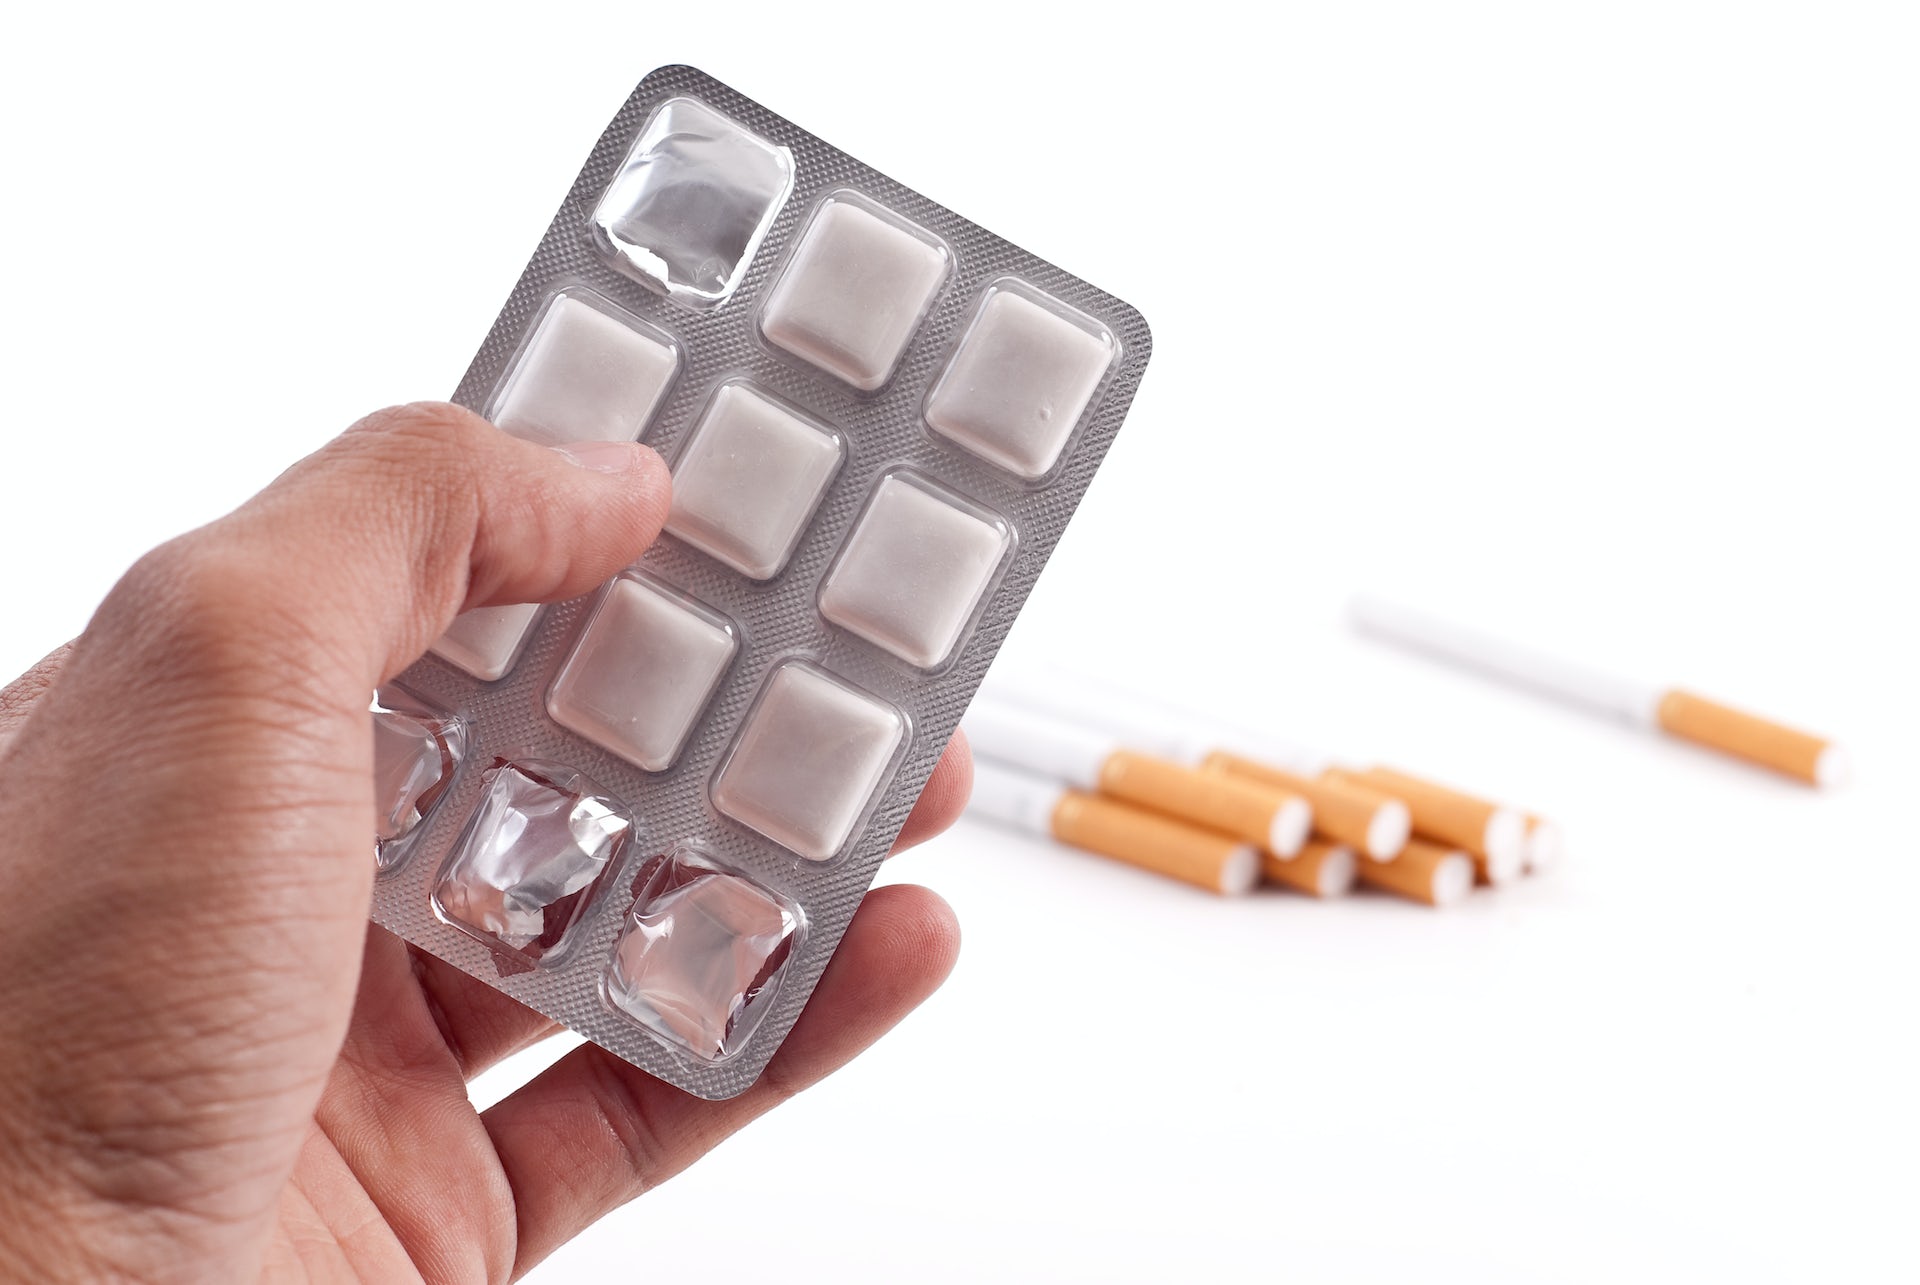 Топ 7 самых эффективных аптечных средств от курения